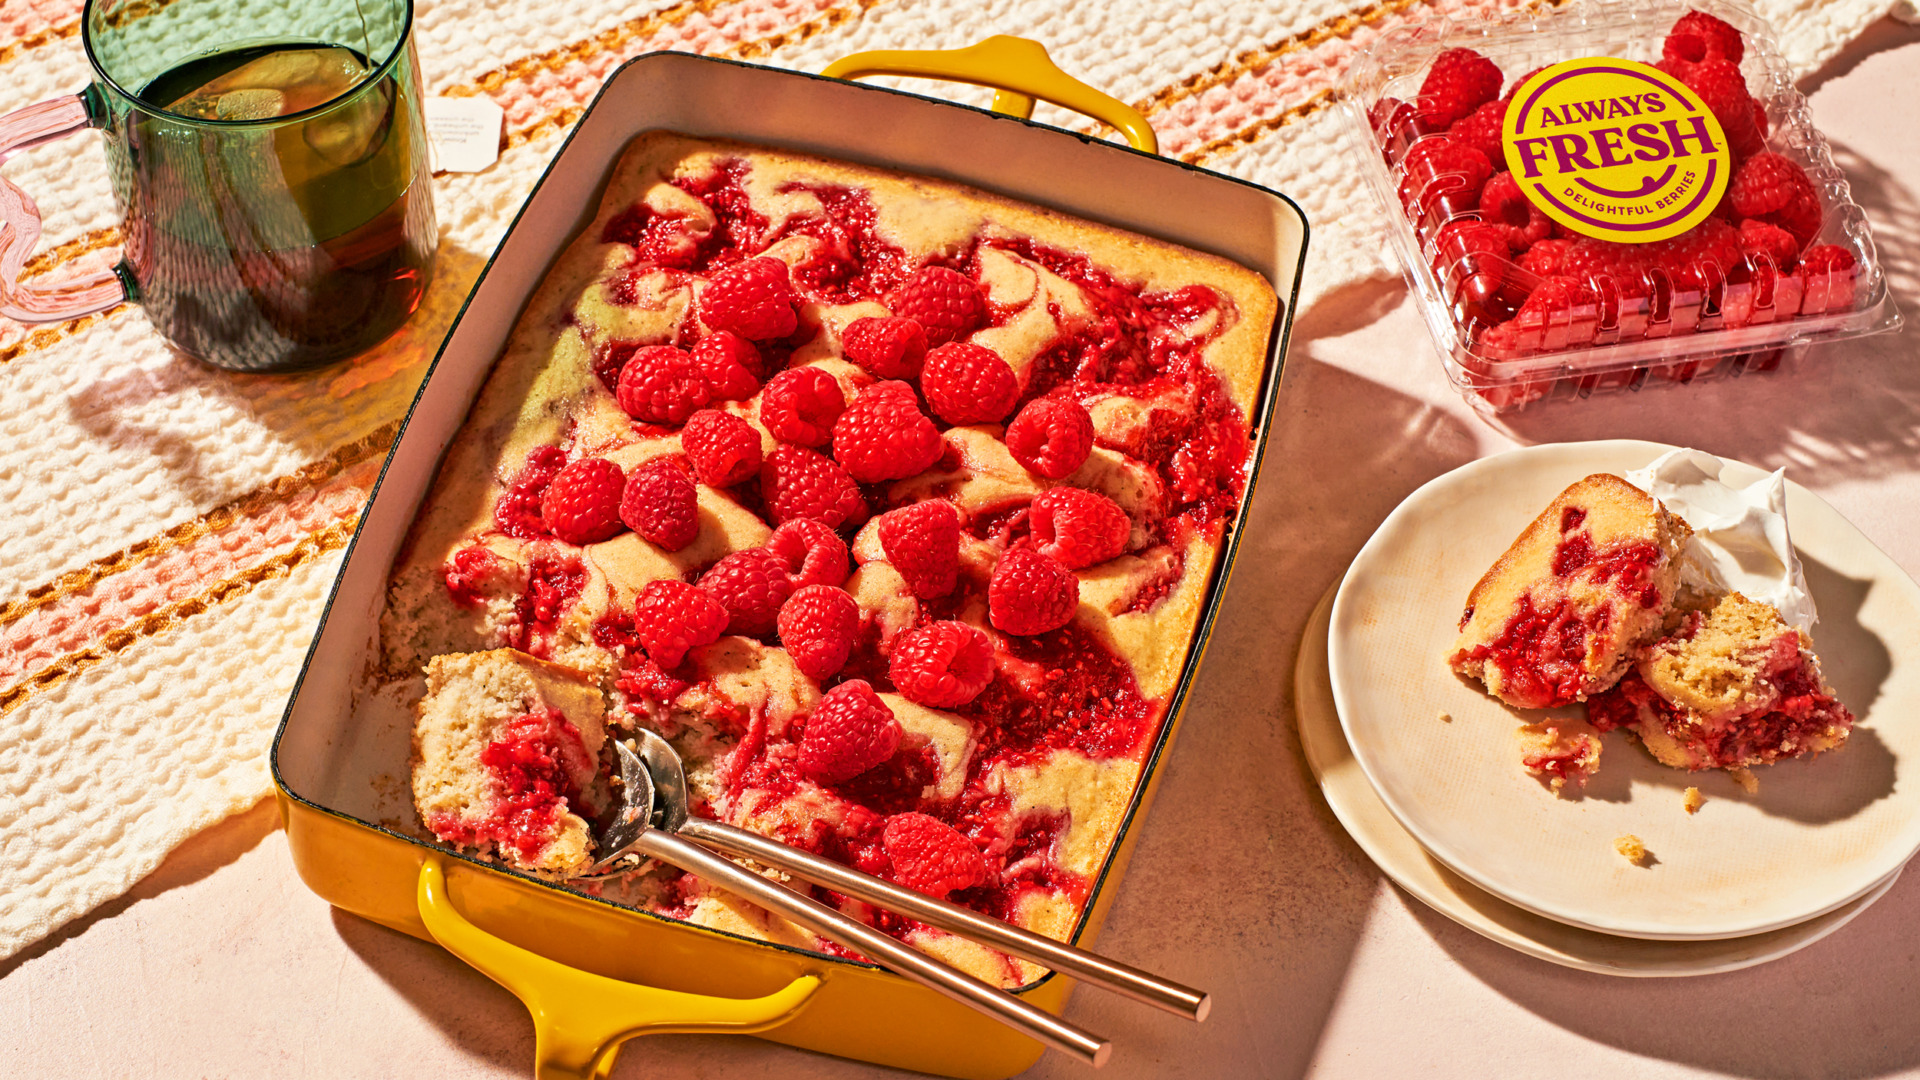 Image of Always Fresh Raspberry Cardamon Spoon Cake with a container of Always Fresh raspberries